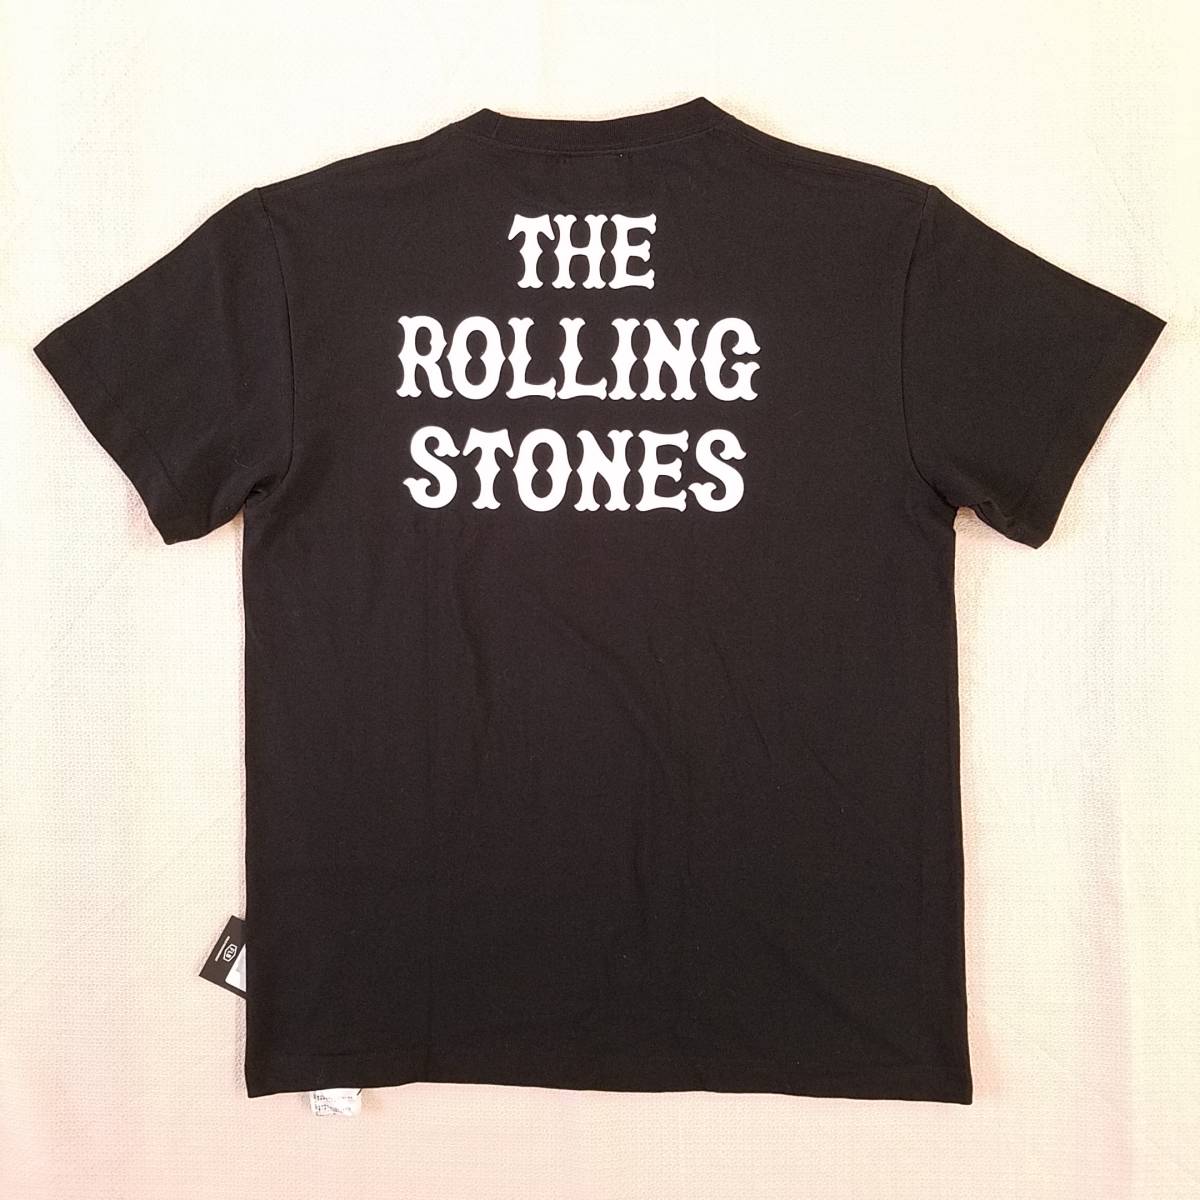  очарование. частота T специальный выпуск! новый товар [The Rolling Stones( The * low кольцо Stone z) × GIANTS(... человек армия )] короткий рукав футболка черный XL цена Y4800+ налог 